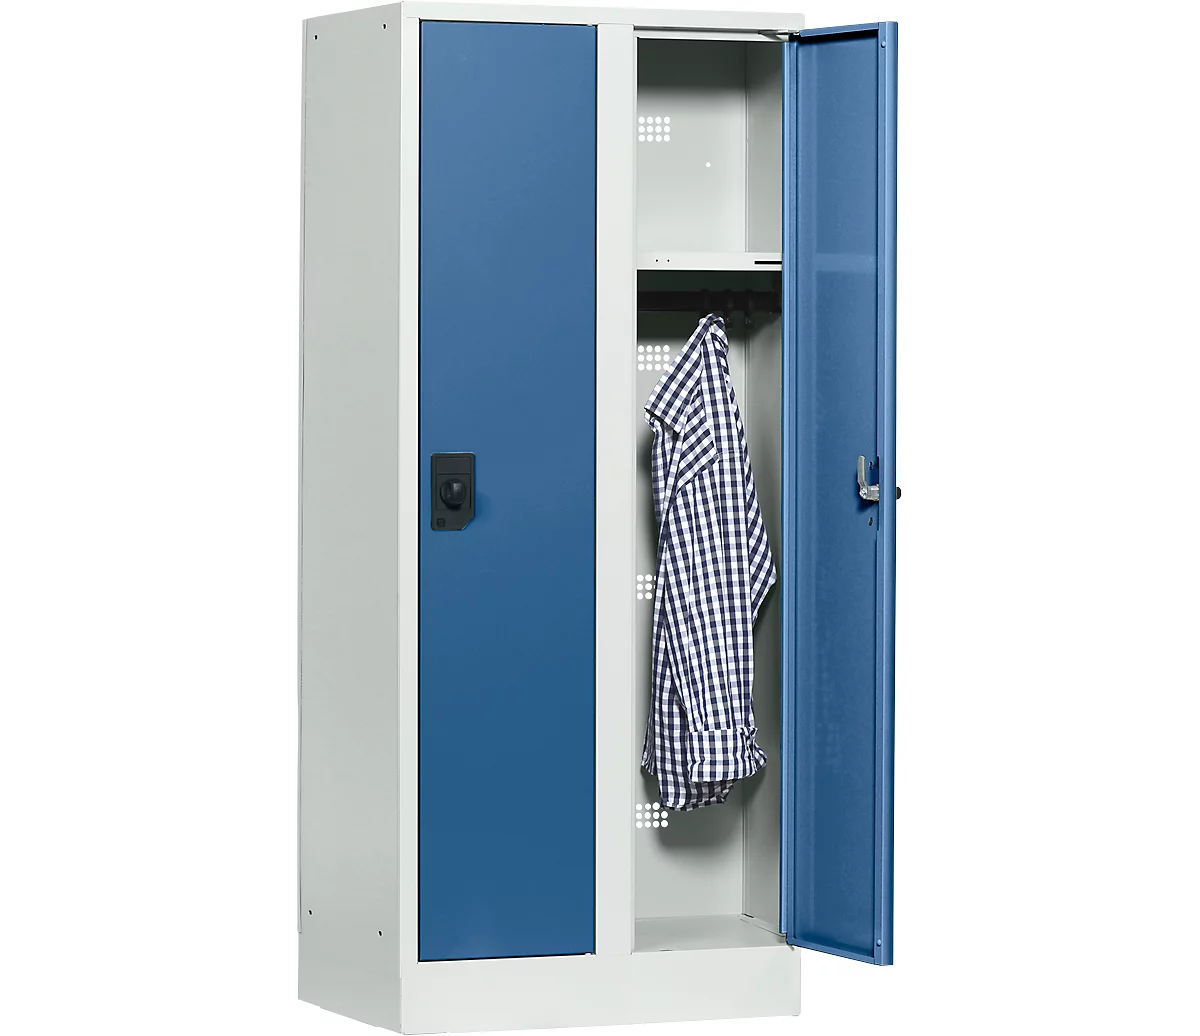 Taquilla escolar, anchura del compartimento 300 mm, cerradura de cilindro de seguridad, 2 compartimentos, gris luminoso/azul brillante